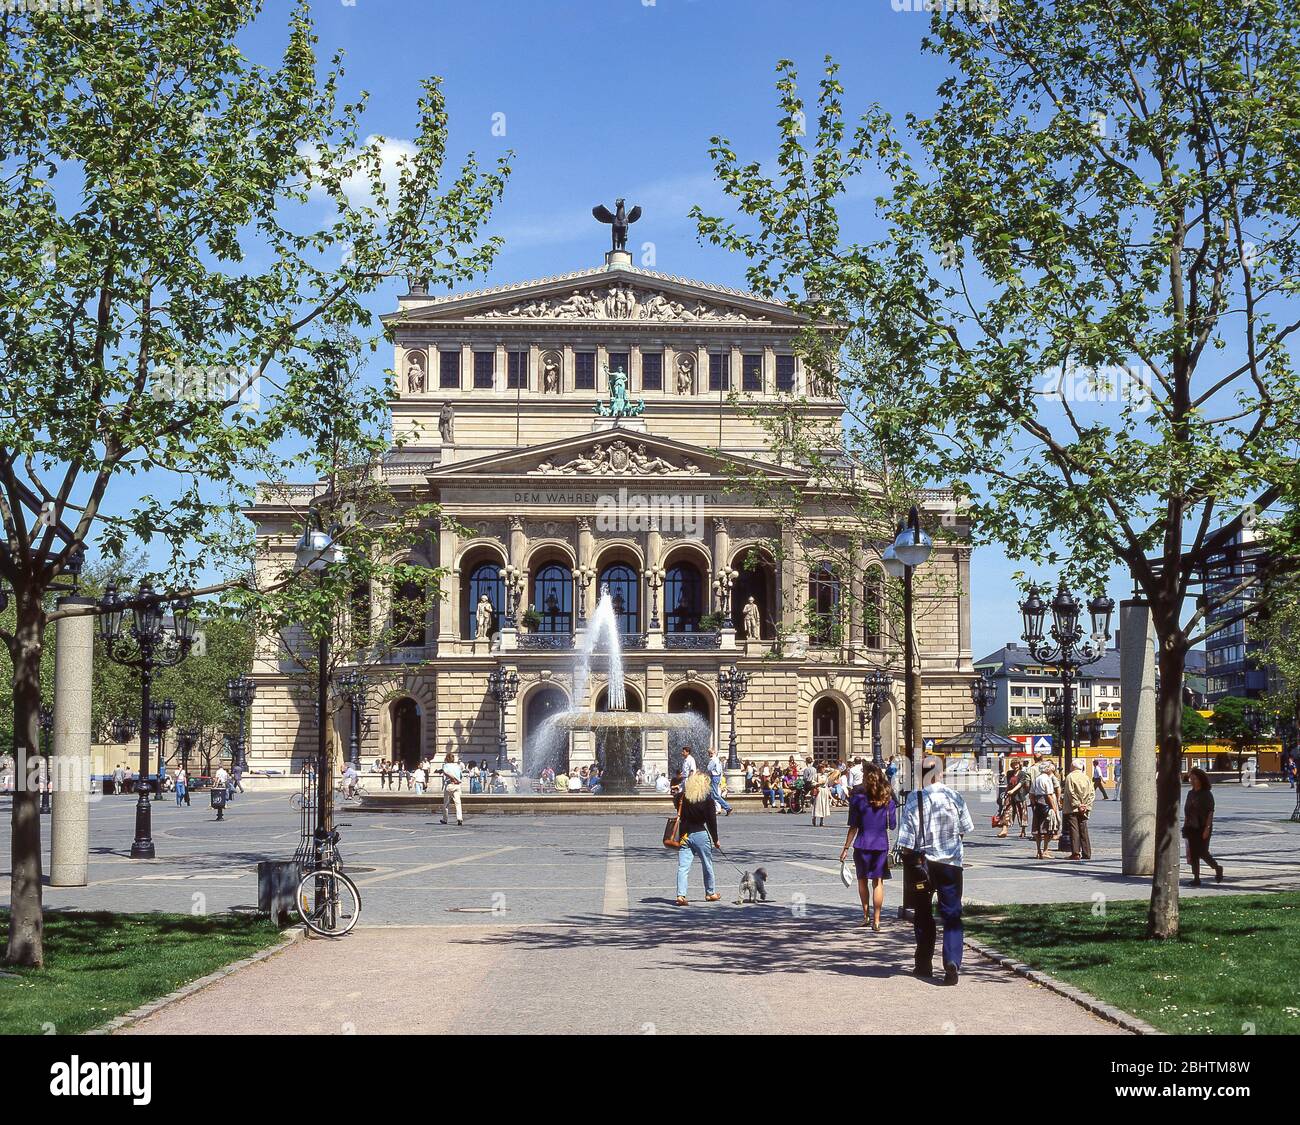 Facciata del vecchio Teatro dell'Opera (Alte Oper), Piazza dell'Opera (Opernplatz) Francoforte, Assia, Repubblica Federale di Germania Foto Stock